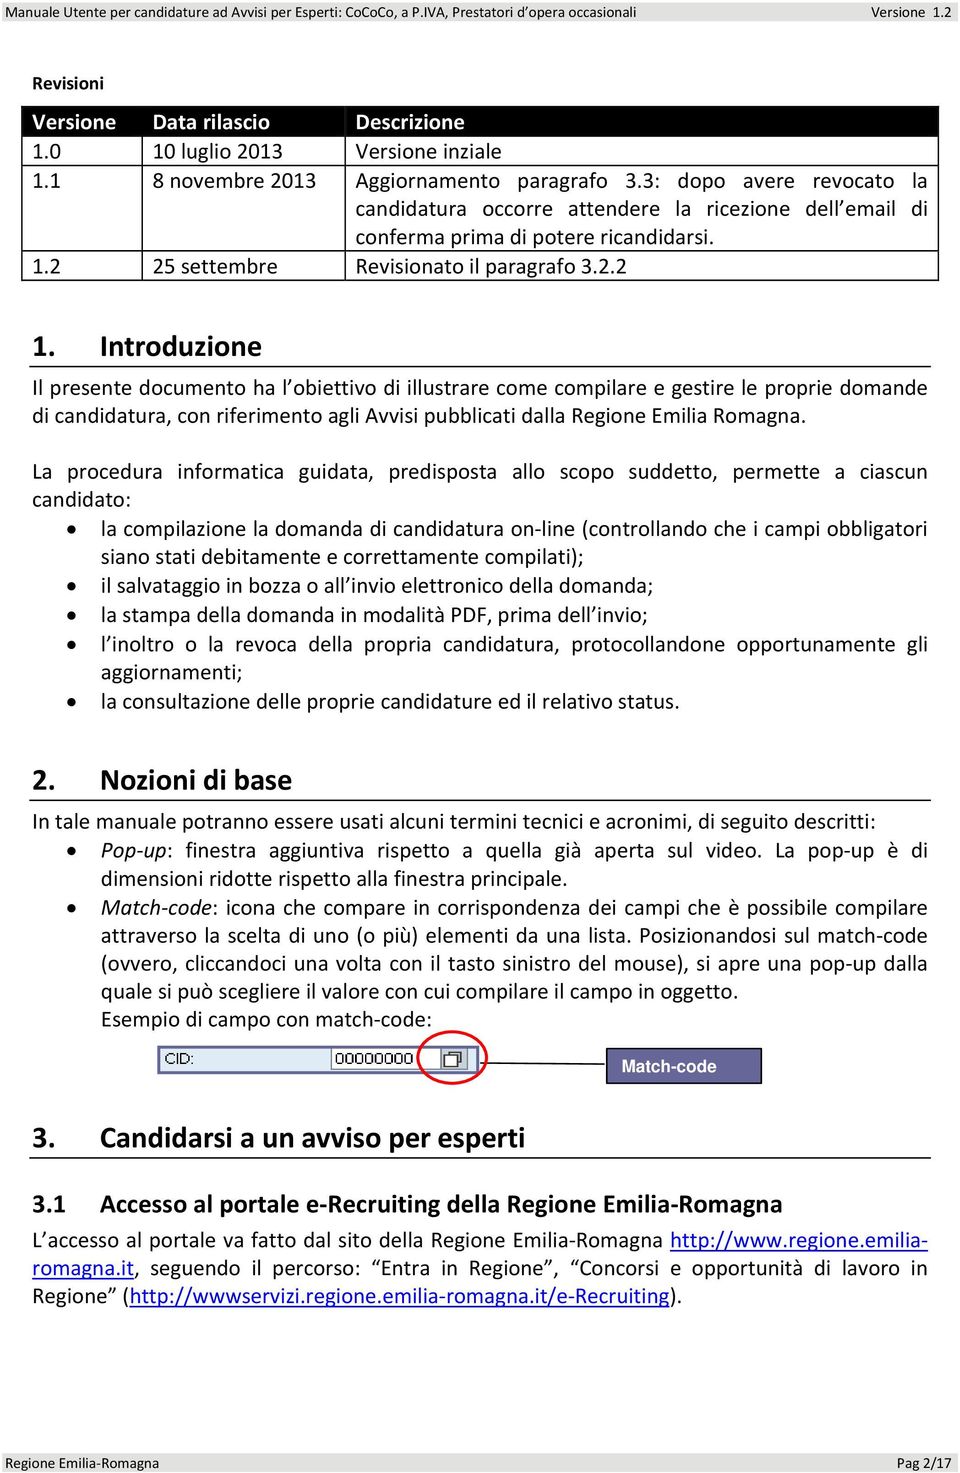 Introduzione Il presente documento ha l obiettivo di illustrare come compilare e gestire le proprie domande di candidatura, con riferimento agli Avvisi pubblicati dalla Regione Emilia Romagna.